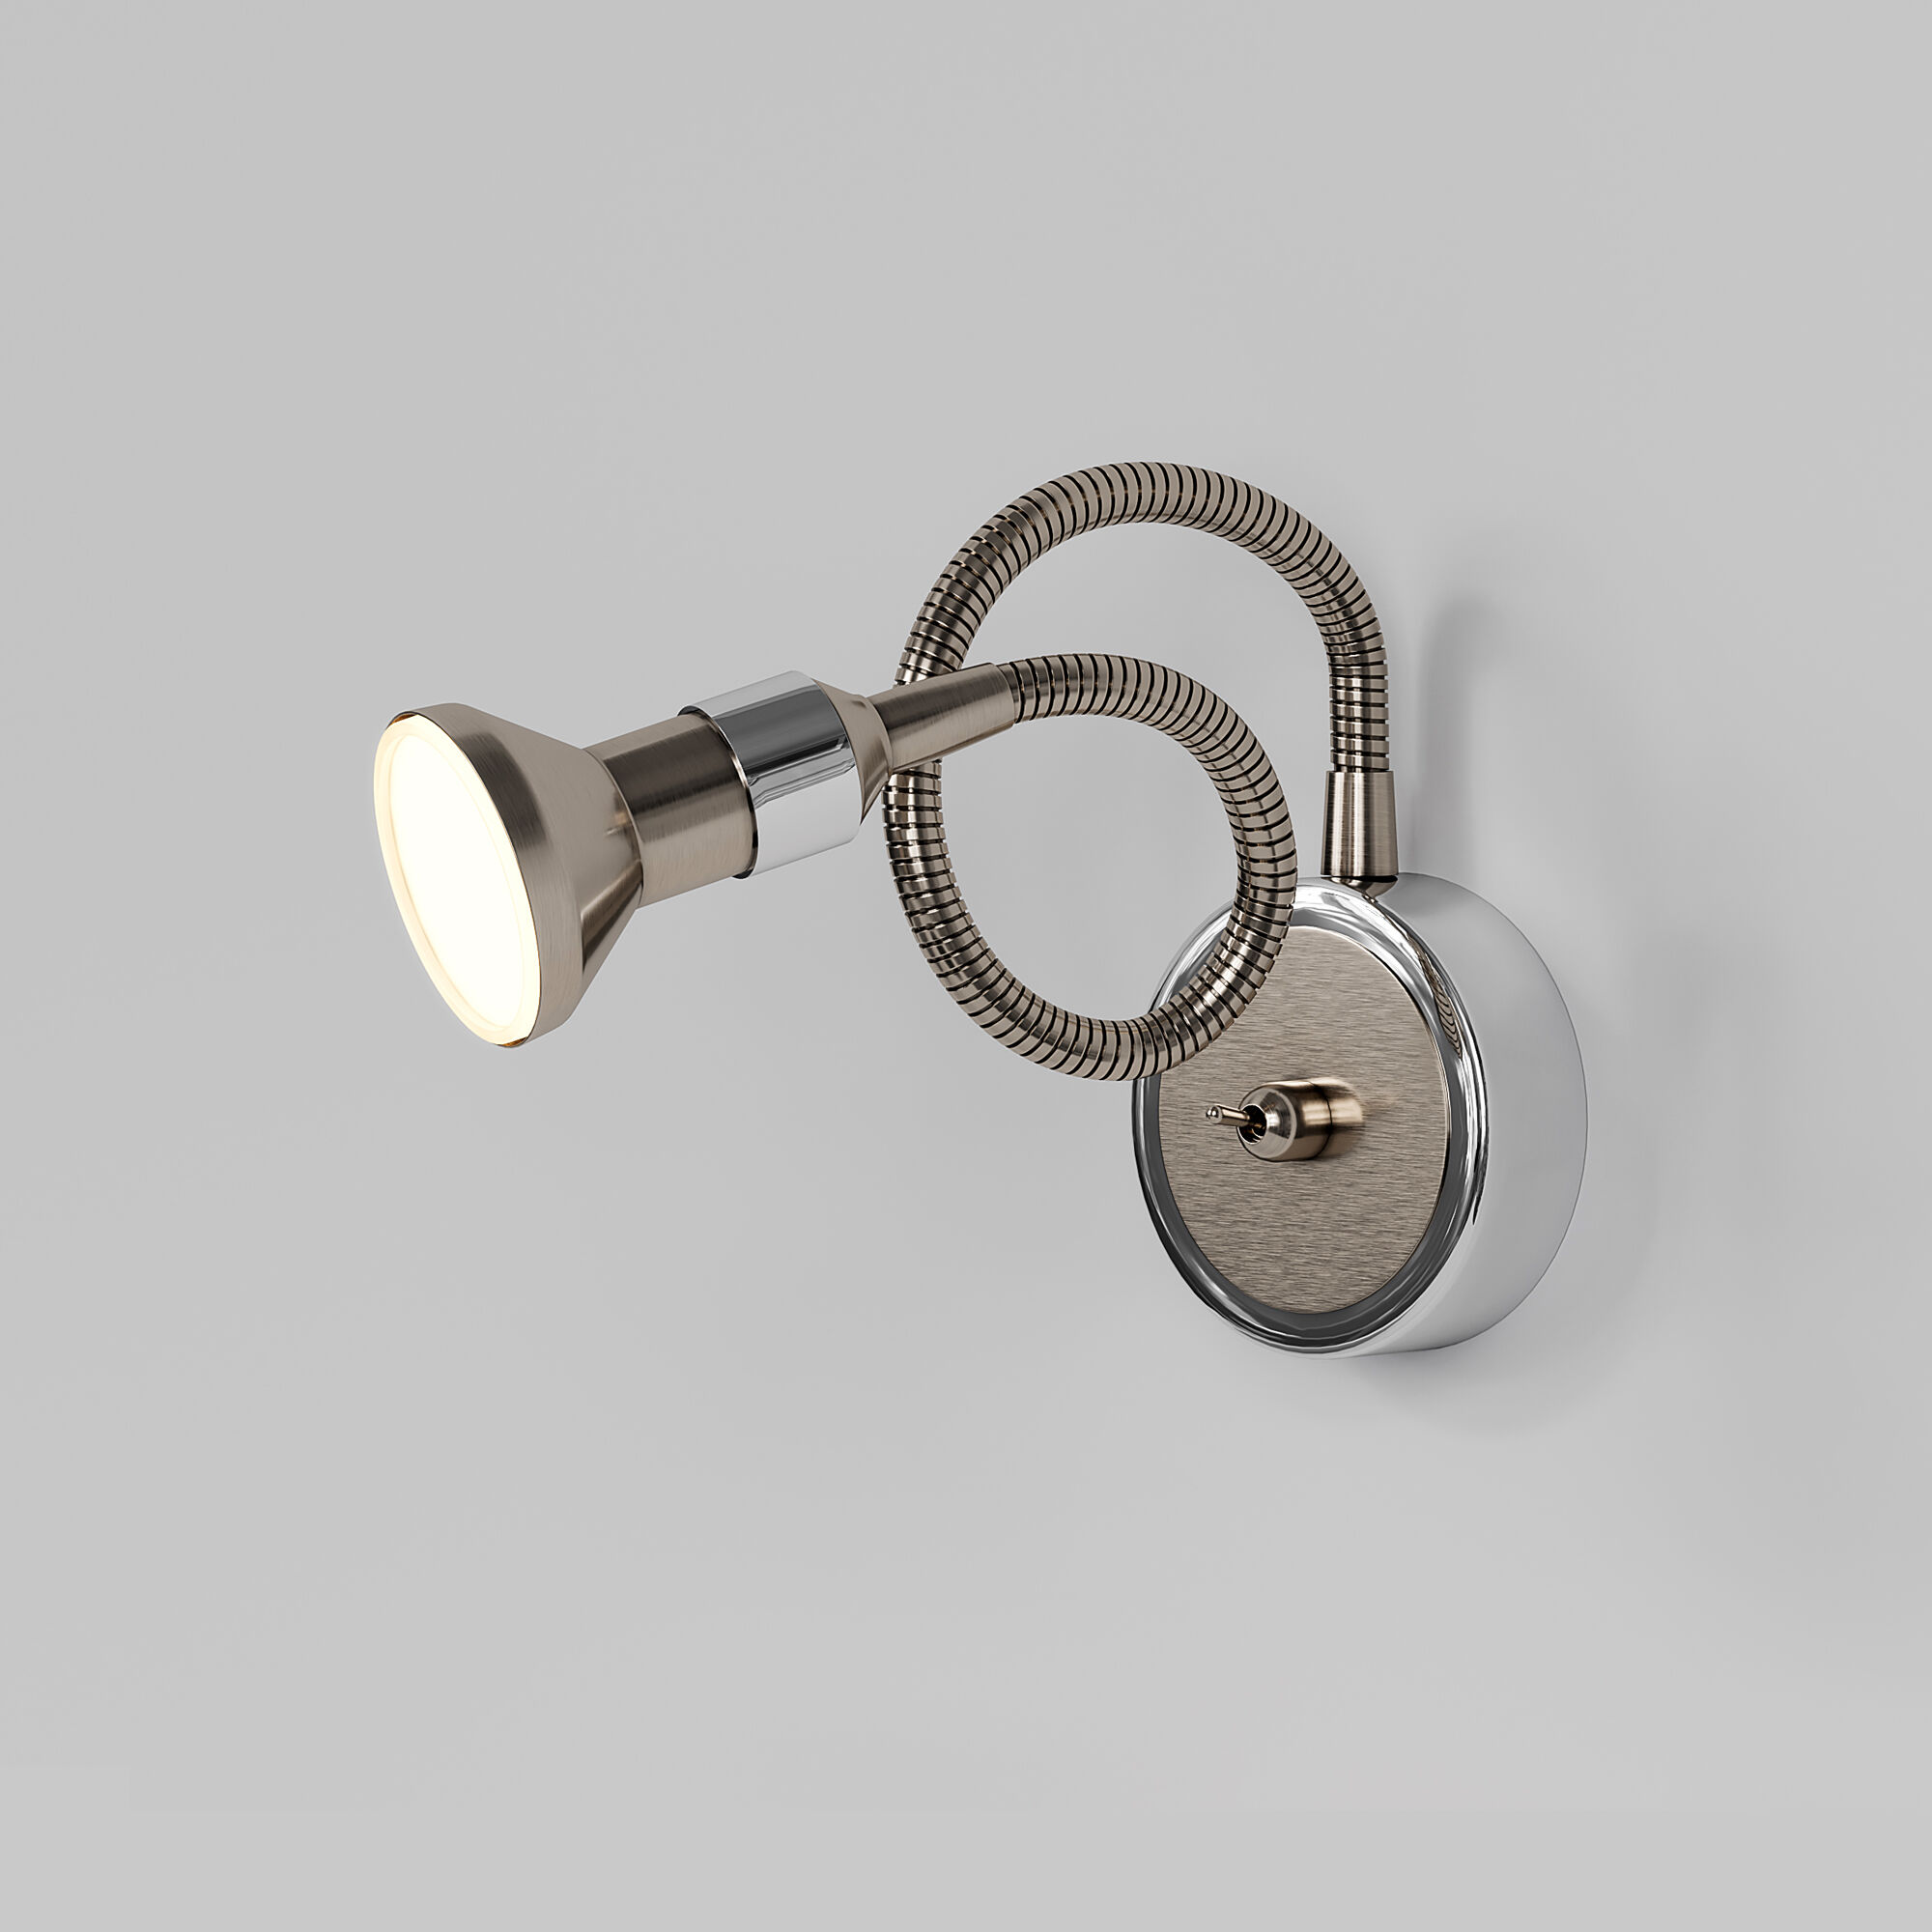 Настенный светильник с гибким корпусом Plica 1215 MR16 сатинированный никель / хром